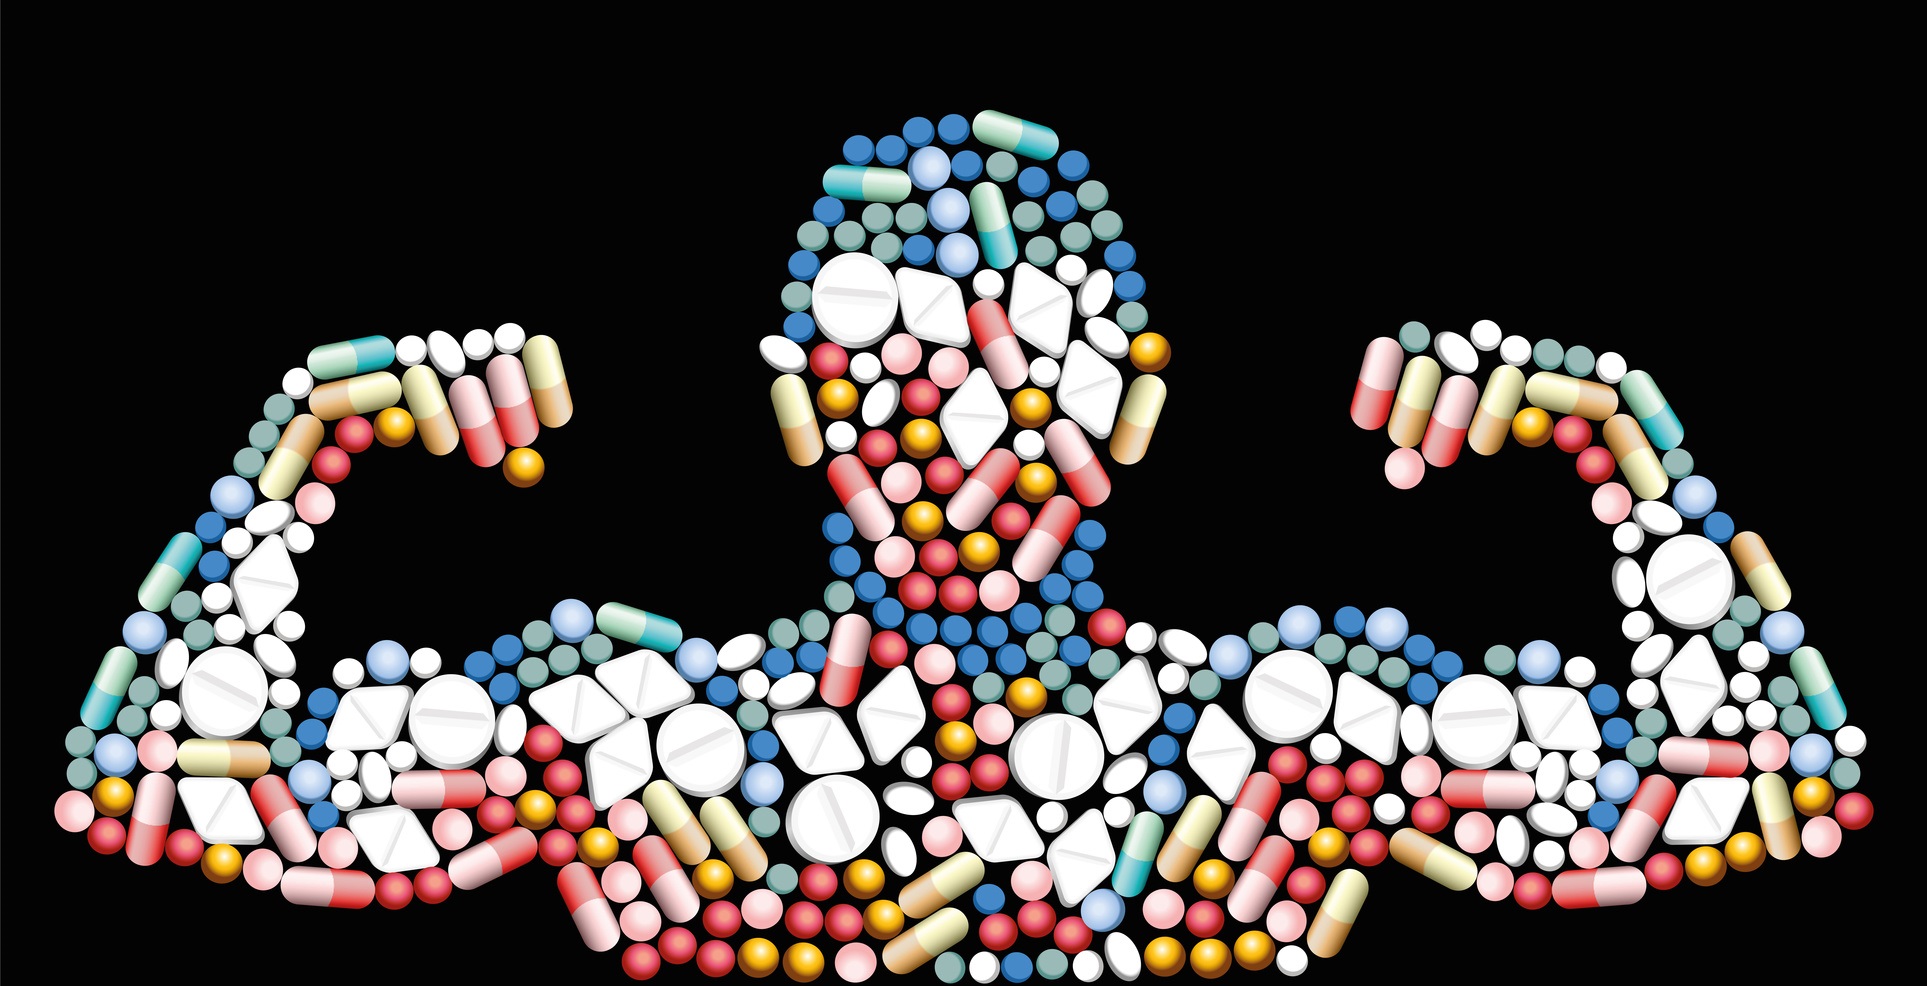 Prendre des médicaments pour être plus performant : c’est du dopage. © Peter Hermes Furian, Fotolia